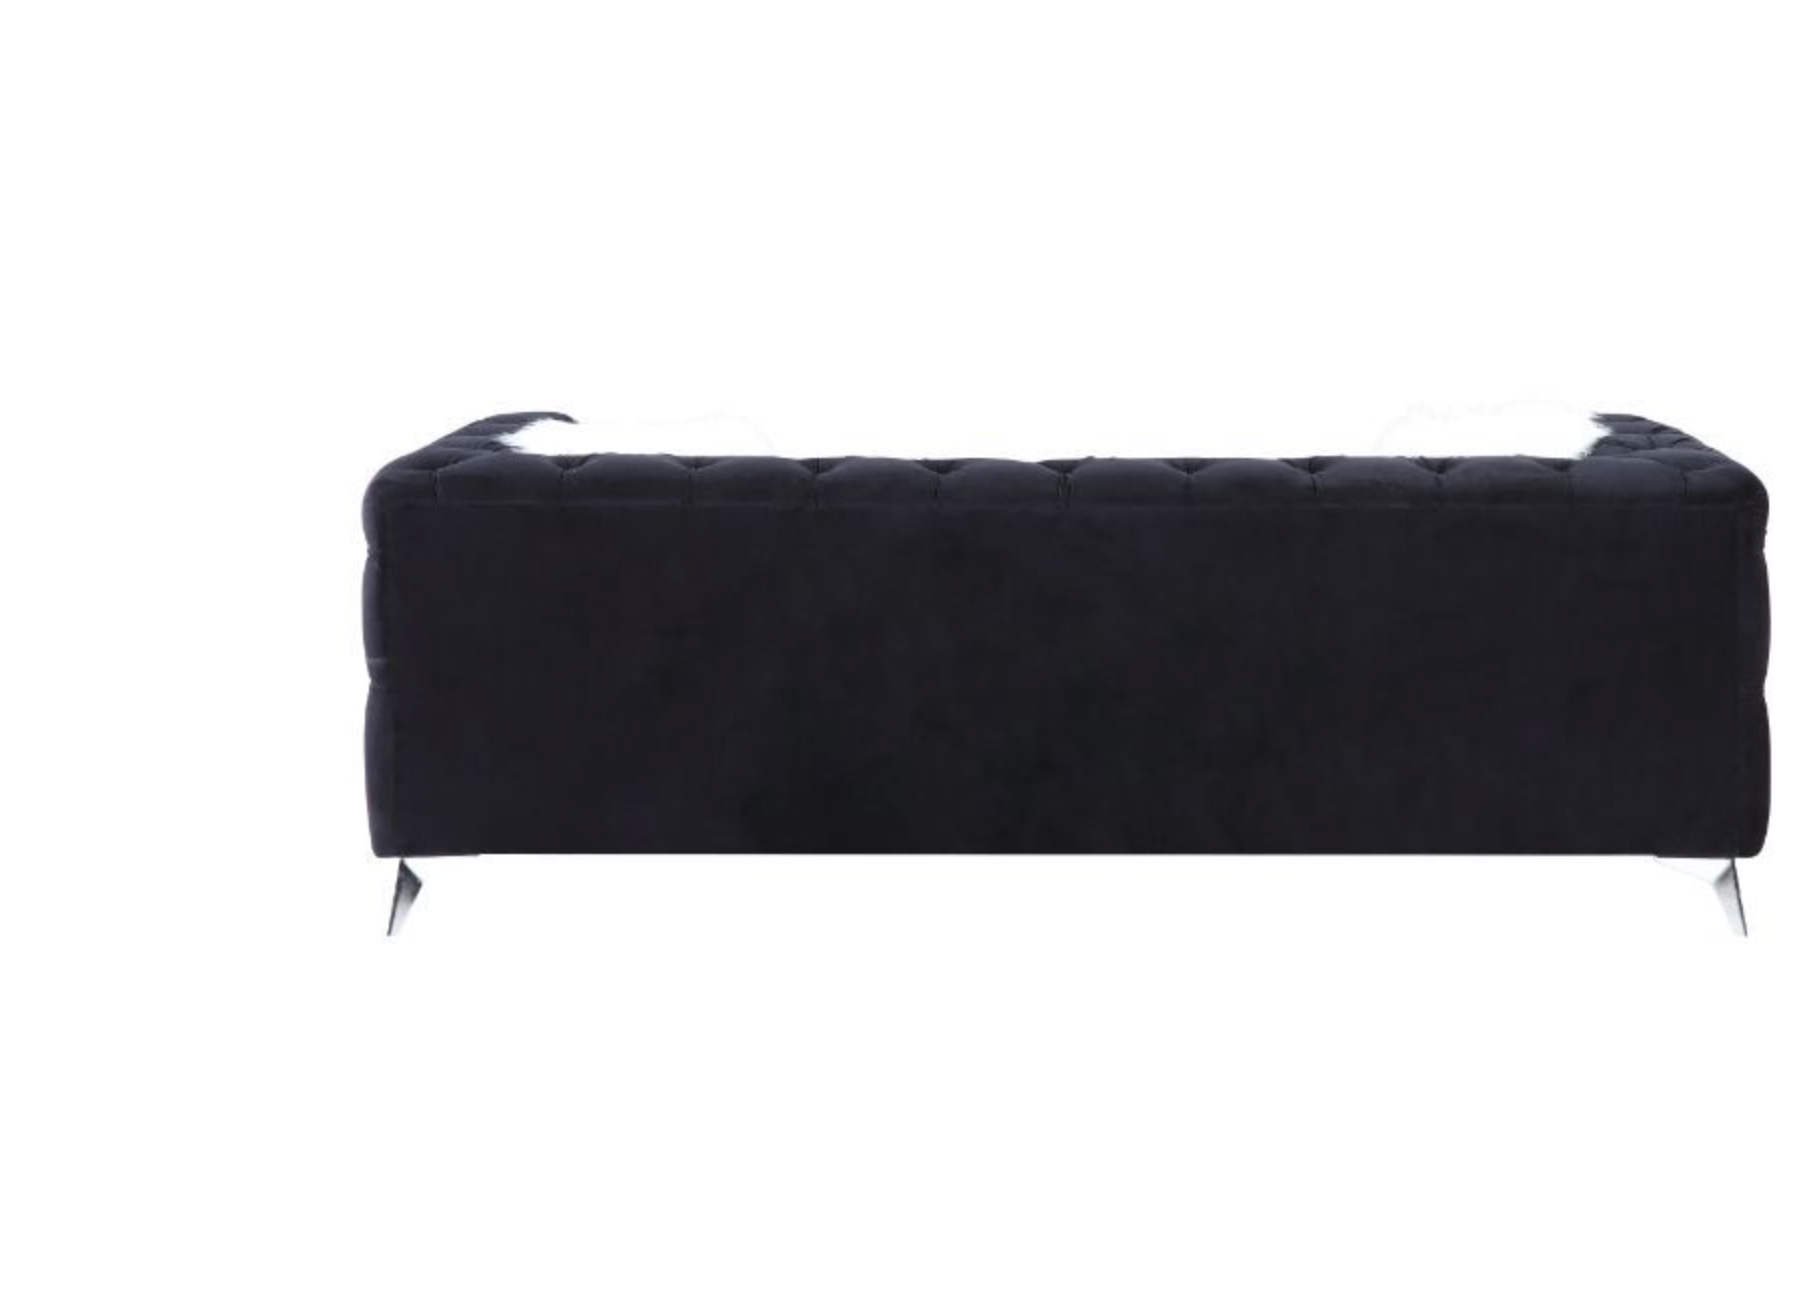 Phifina Contemporary Black Velvet Tufted Sofa & Loveseat Set